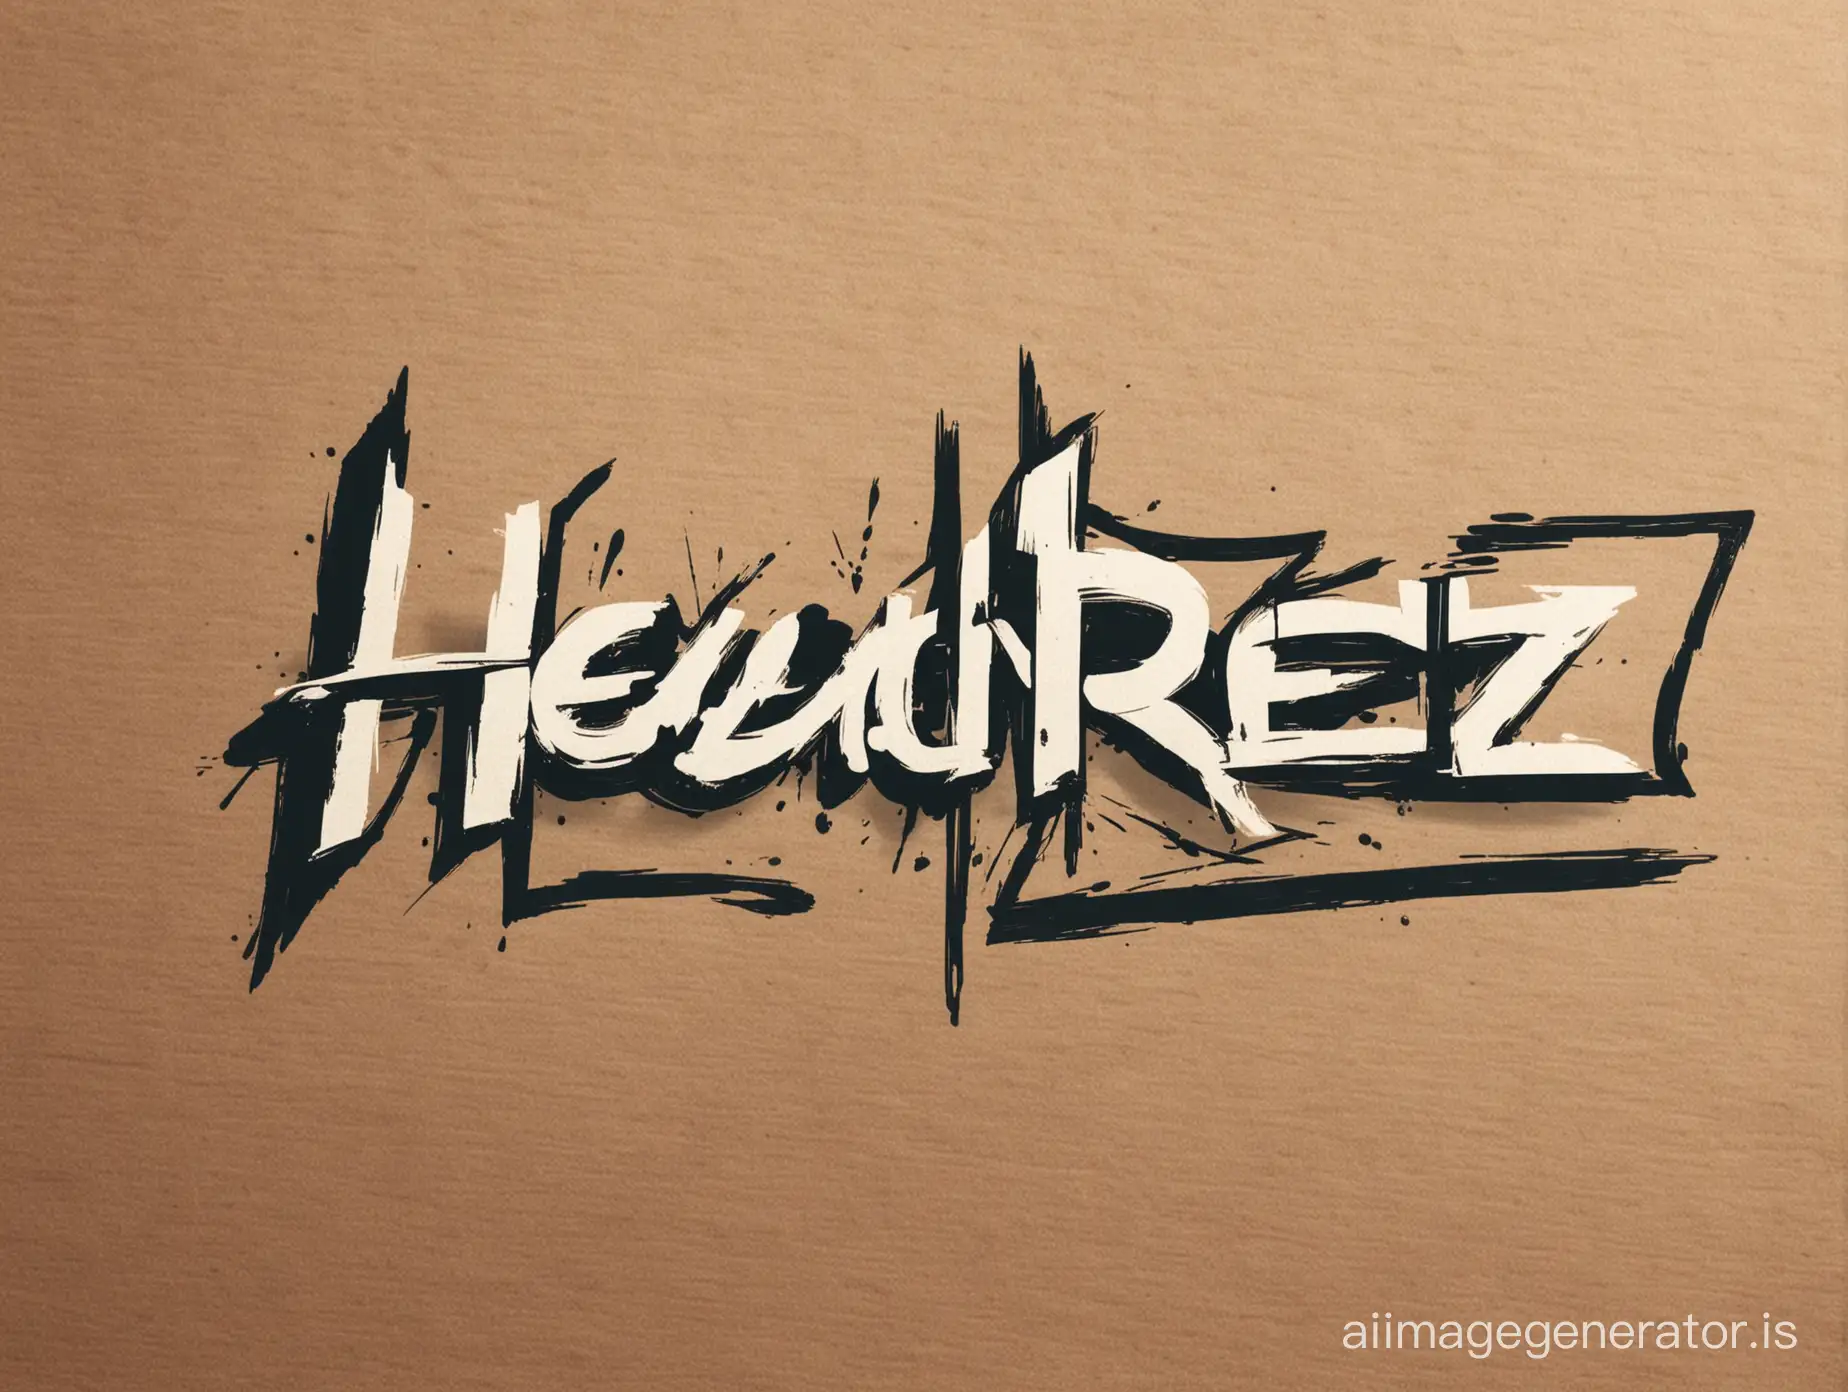 logotype "HeadRez"